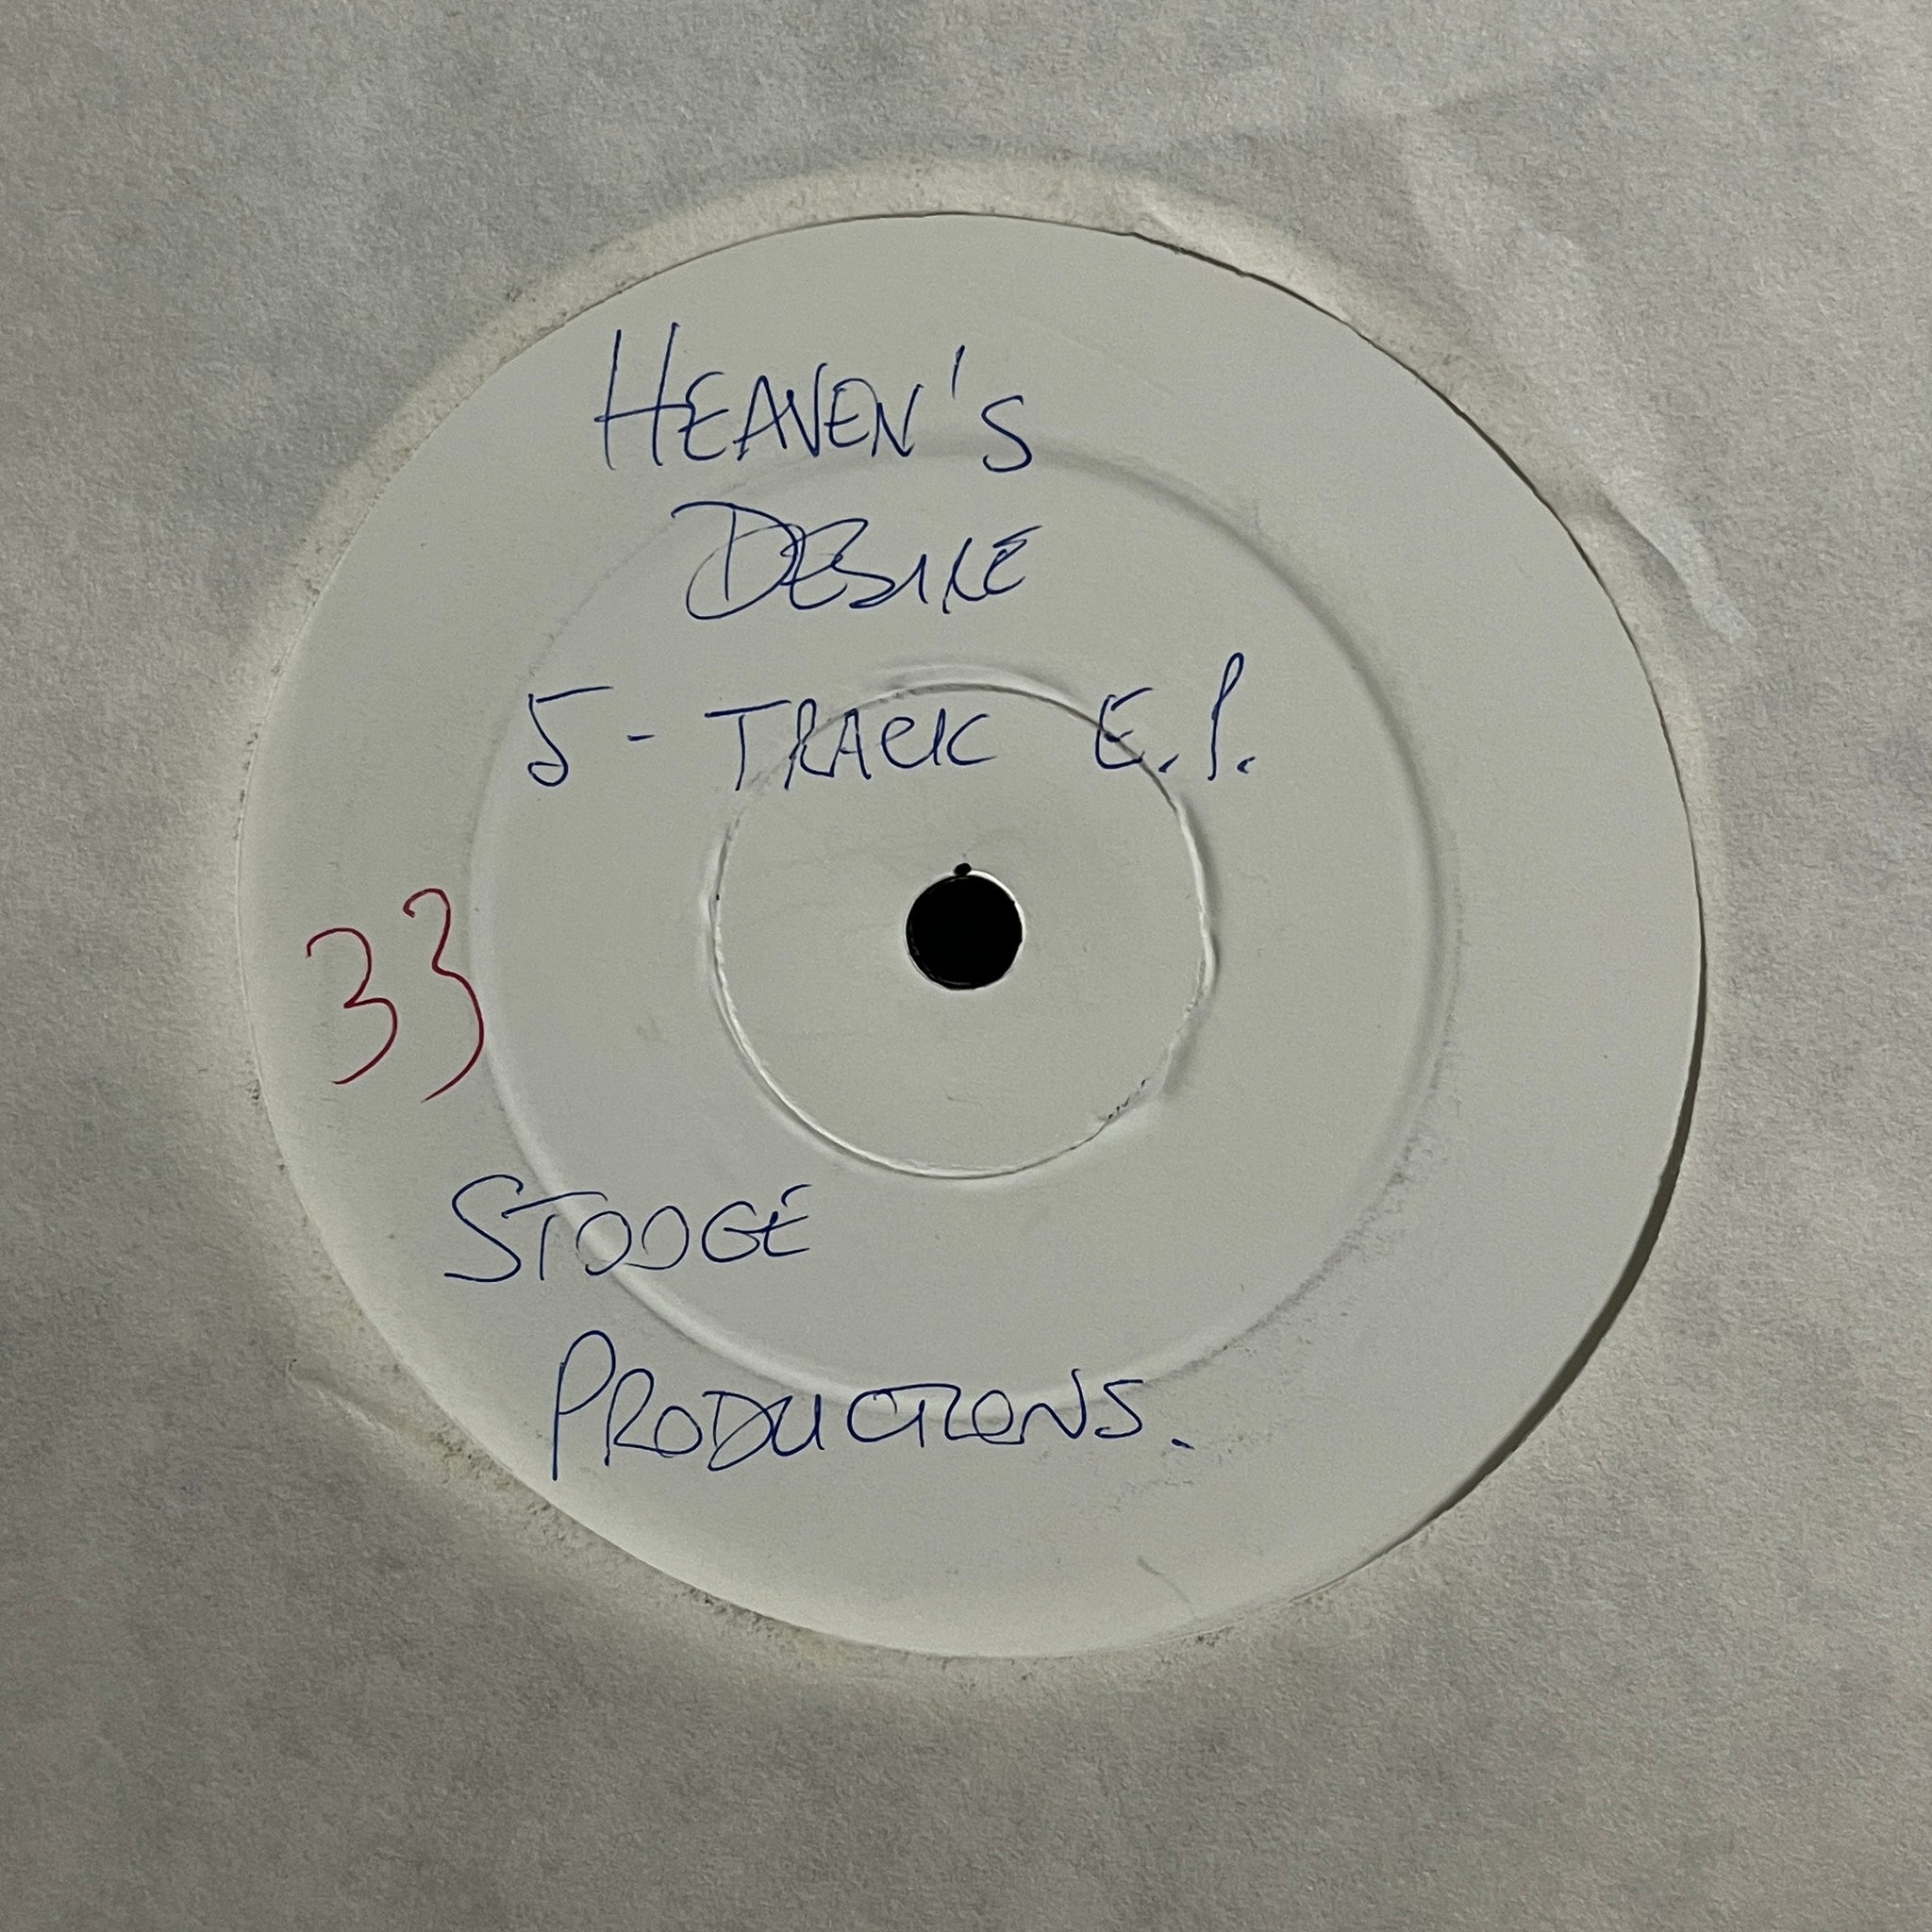 Stooge – 5 Track EP